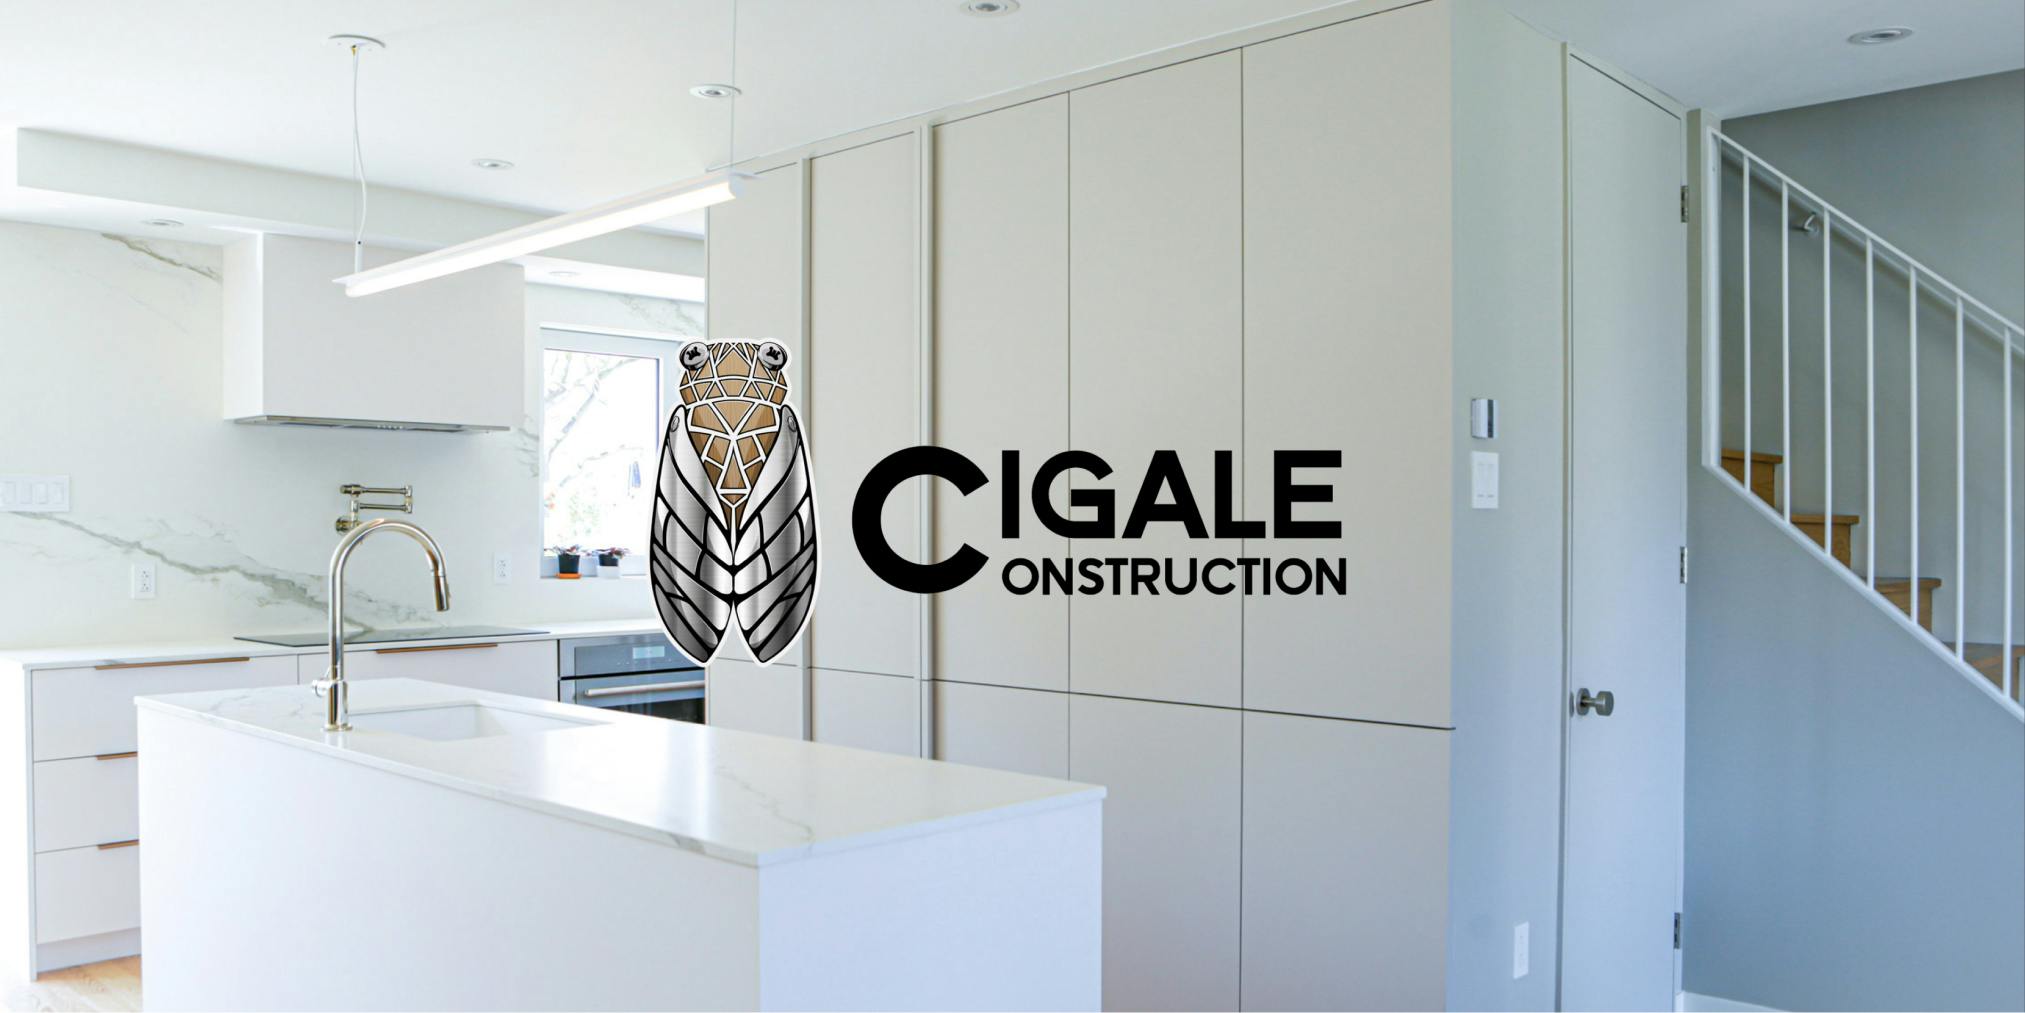 Cigale Construction